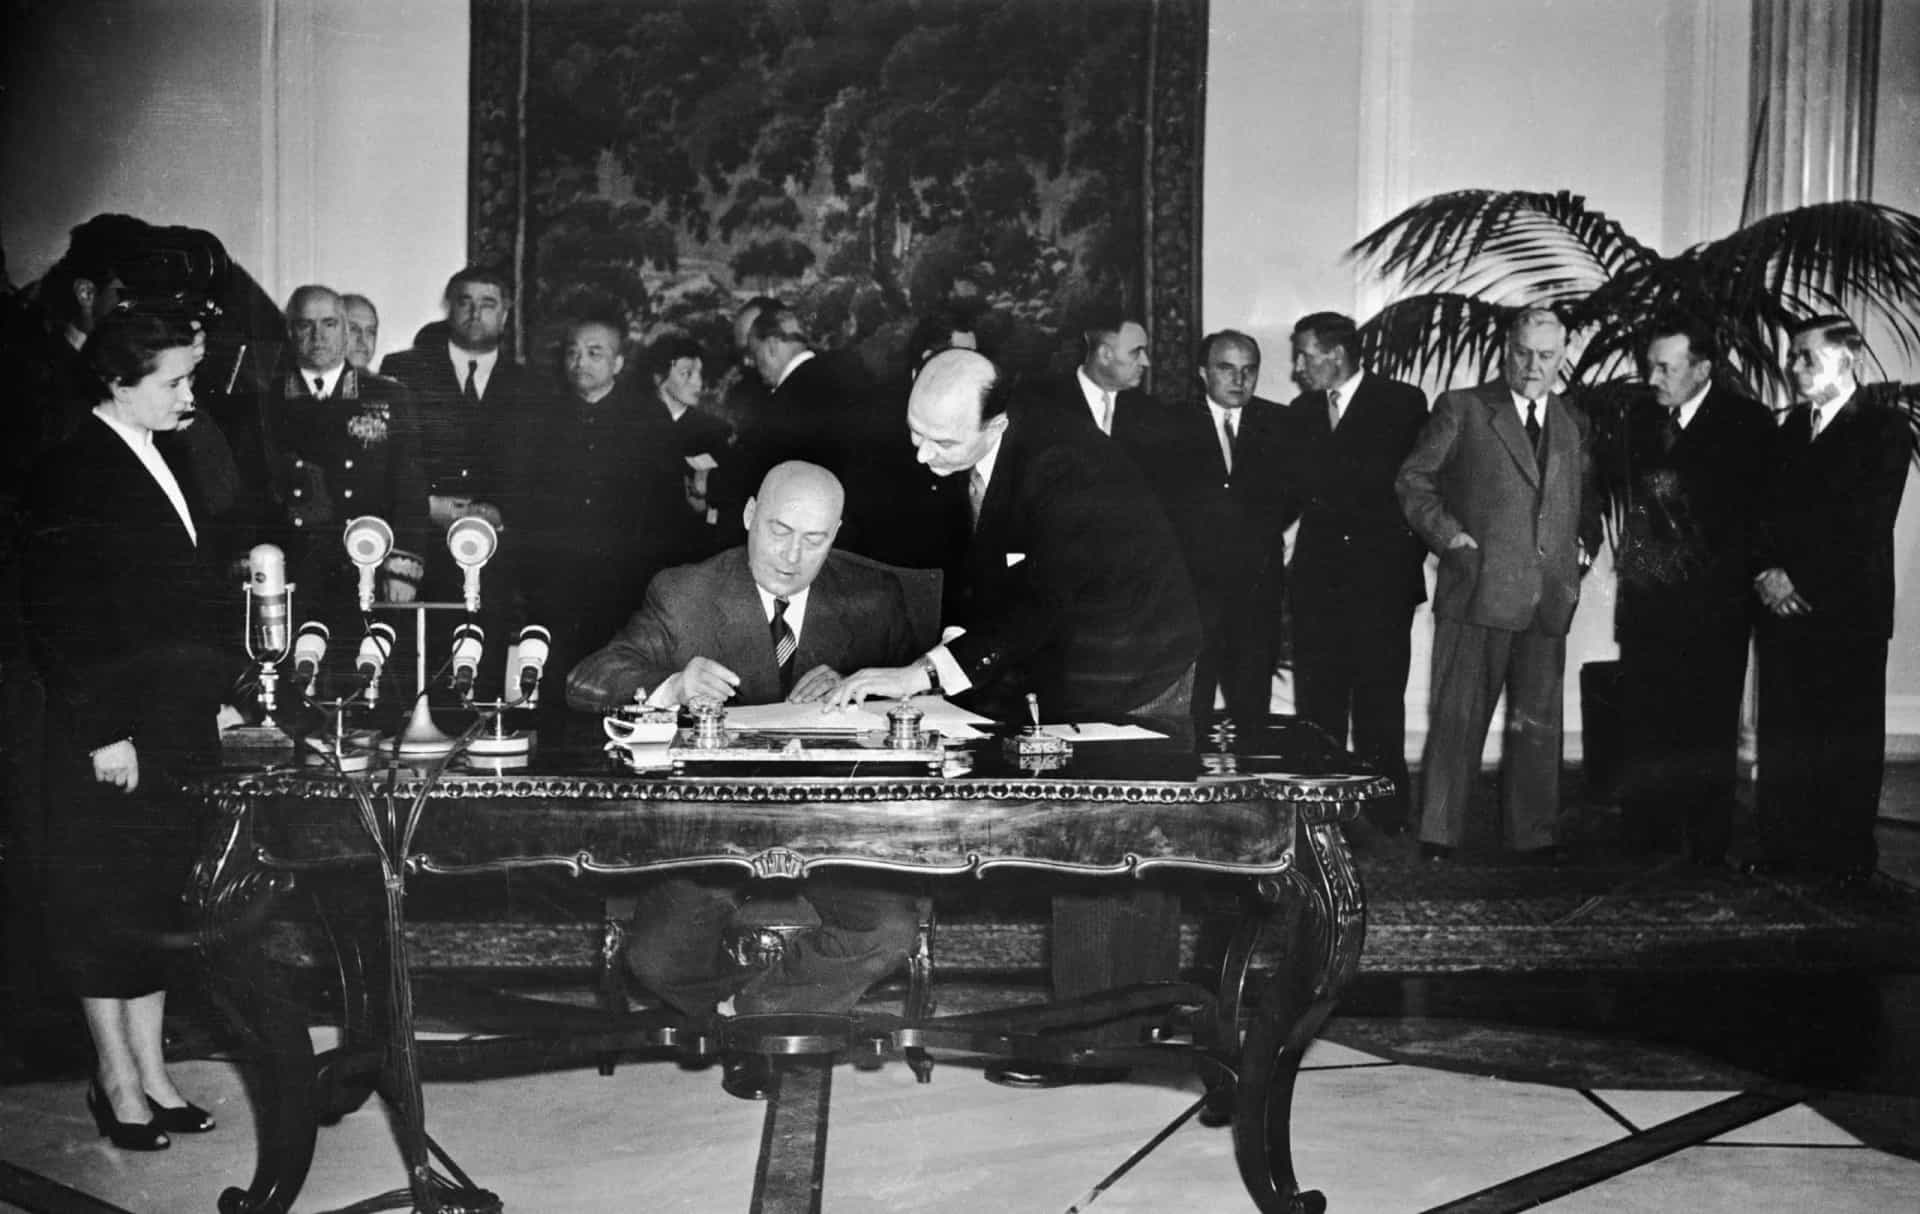 <p>Après l'adhésion de l'Allemagne de l'Ouest en 1955, les Soviétiques ont répondu à l'OTAN en signant le Pacte de Varsovie. Il s'agit d'une alliance entre l'Union soviétique et les <a href="https://www.starsinsider.com/fr/lifestyle/391463/chute-du-mur-de-berlin-retour-sur-leffondrement-du-communisme-en-europe">pays communistes</a> d'Europe de l'Est.</p>